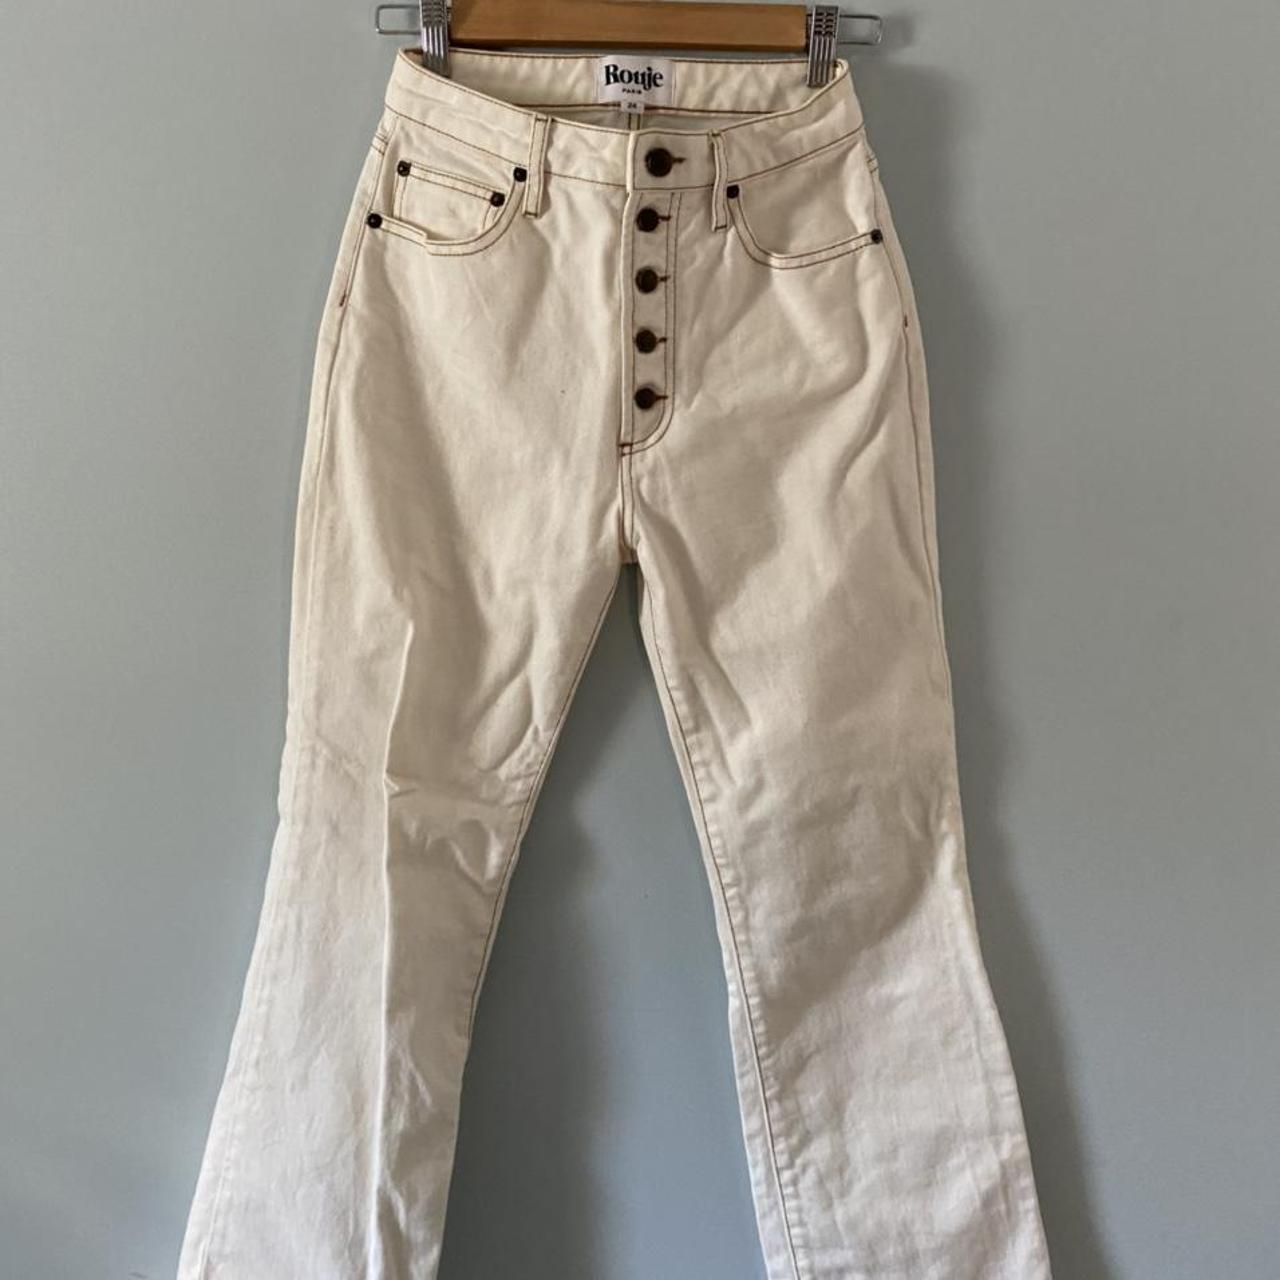 Rouje Bastille Jeans in White by Jeanne Damas, size... - Depop